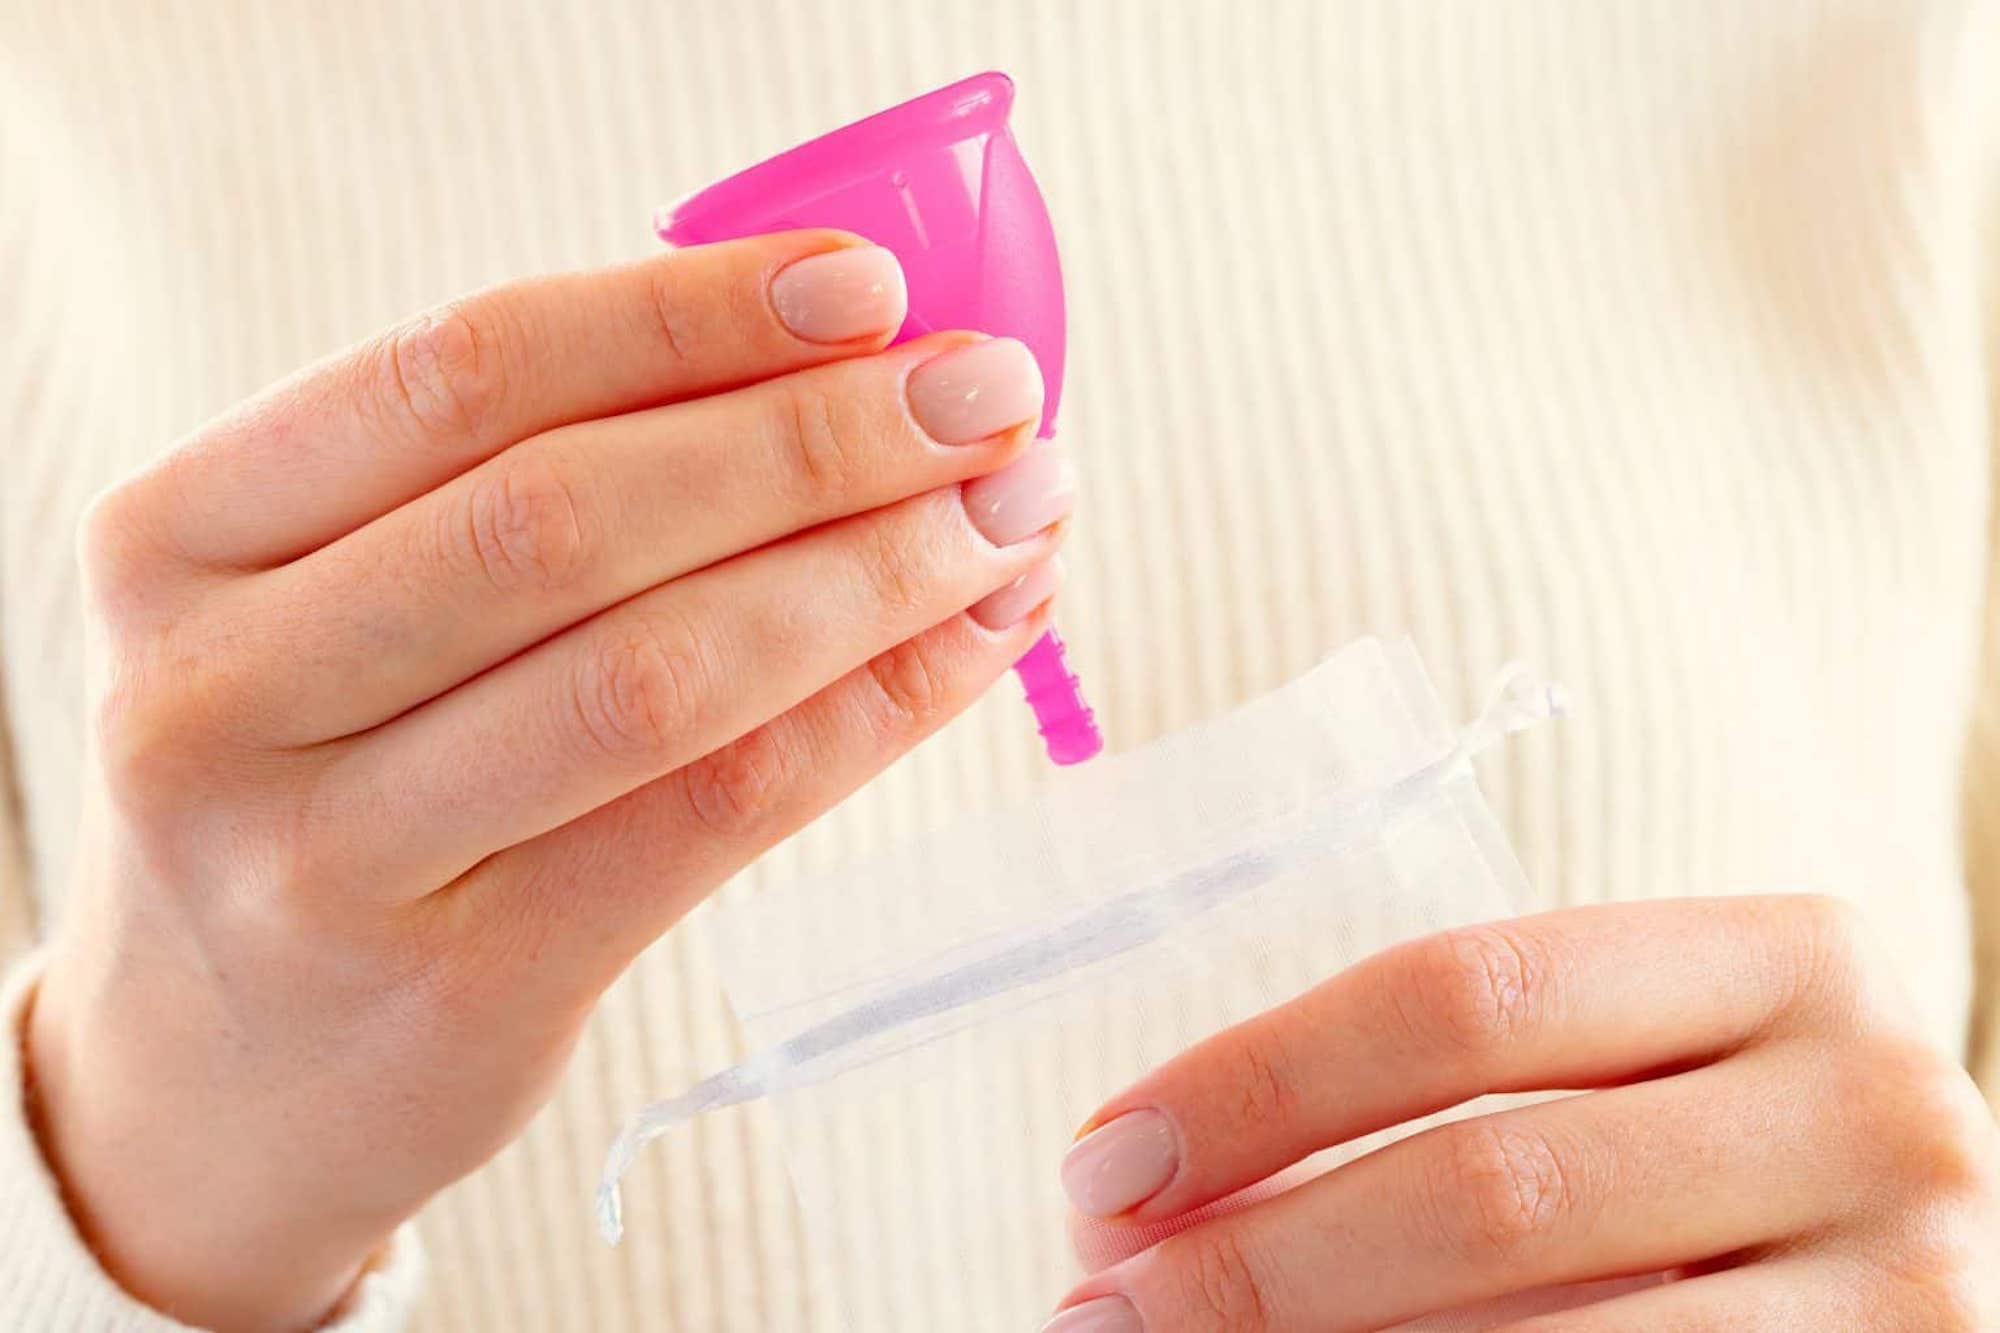 Universitarias inventan copa menstrual que detecta ETS